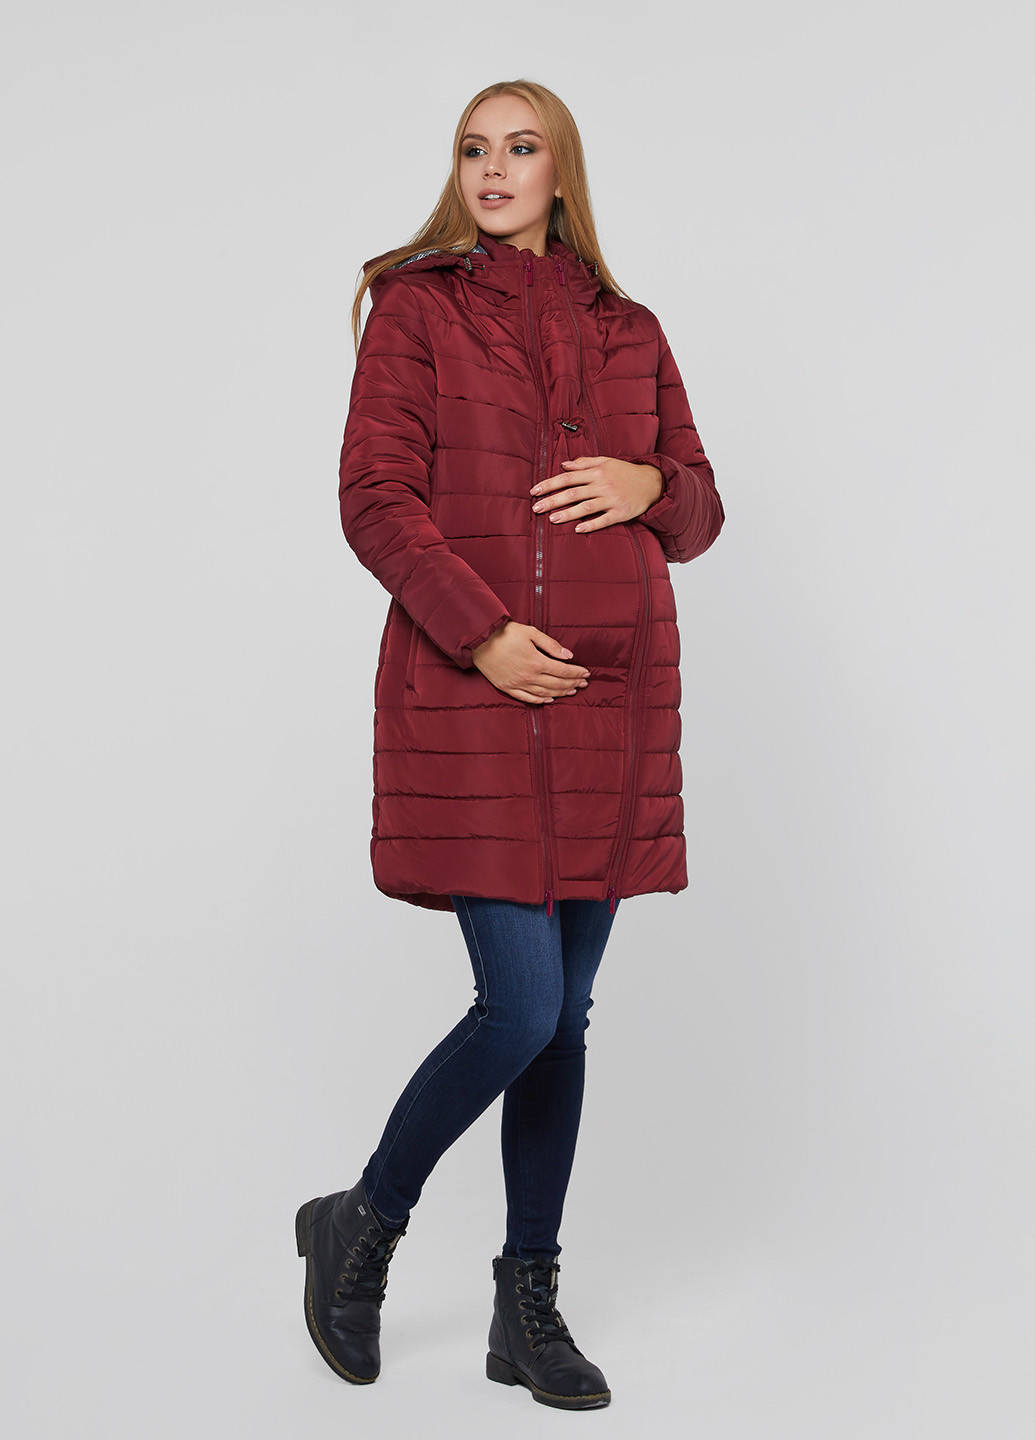 Бордовая зимняя слингокуртка для беременных Lullababe